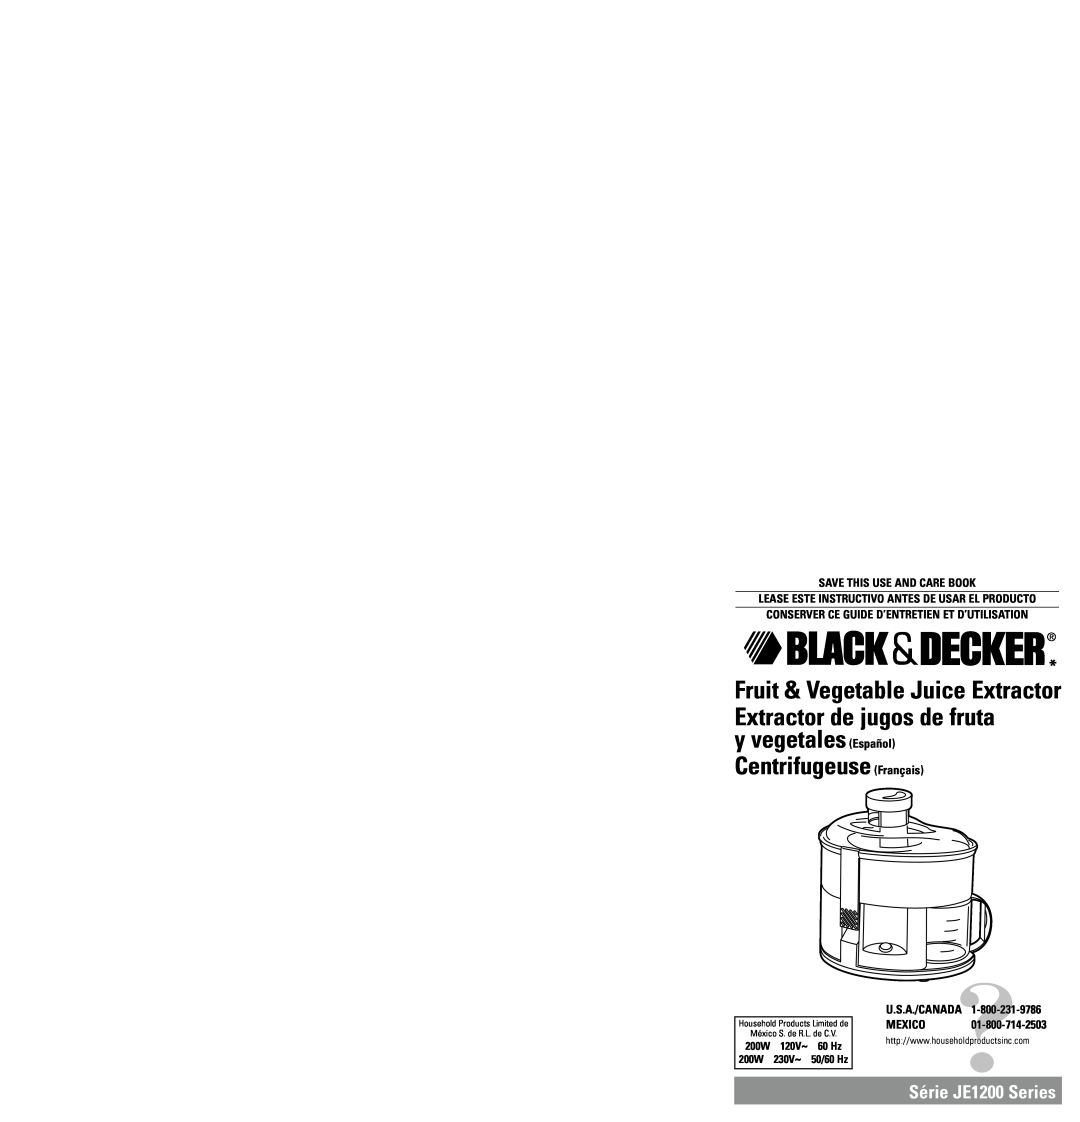 Black & Decker JE1200 Series warranty y vegetales Español Centrifugeuse Français, Mexico, Save This Use And Care Book 